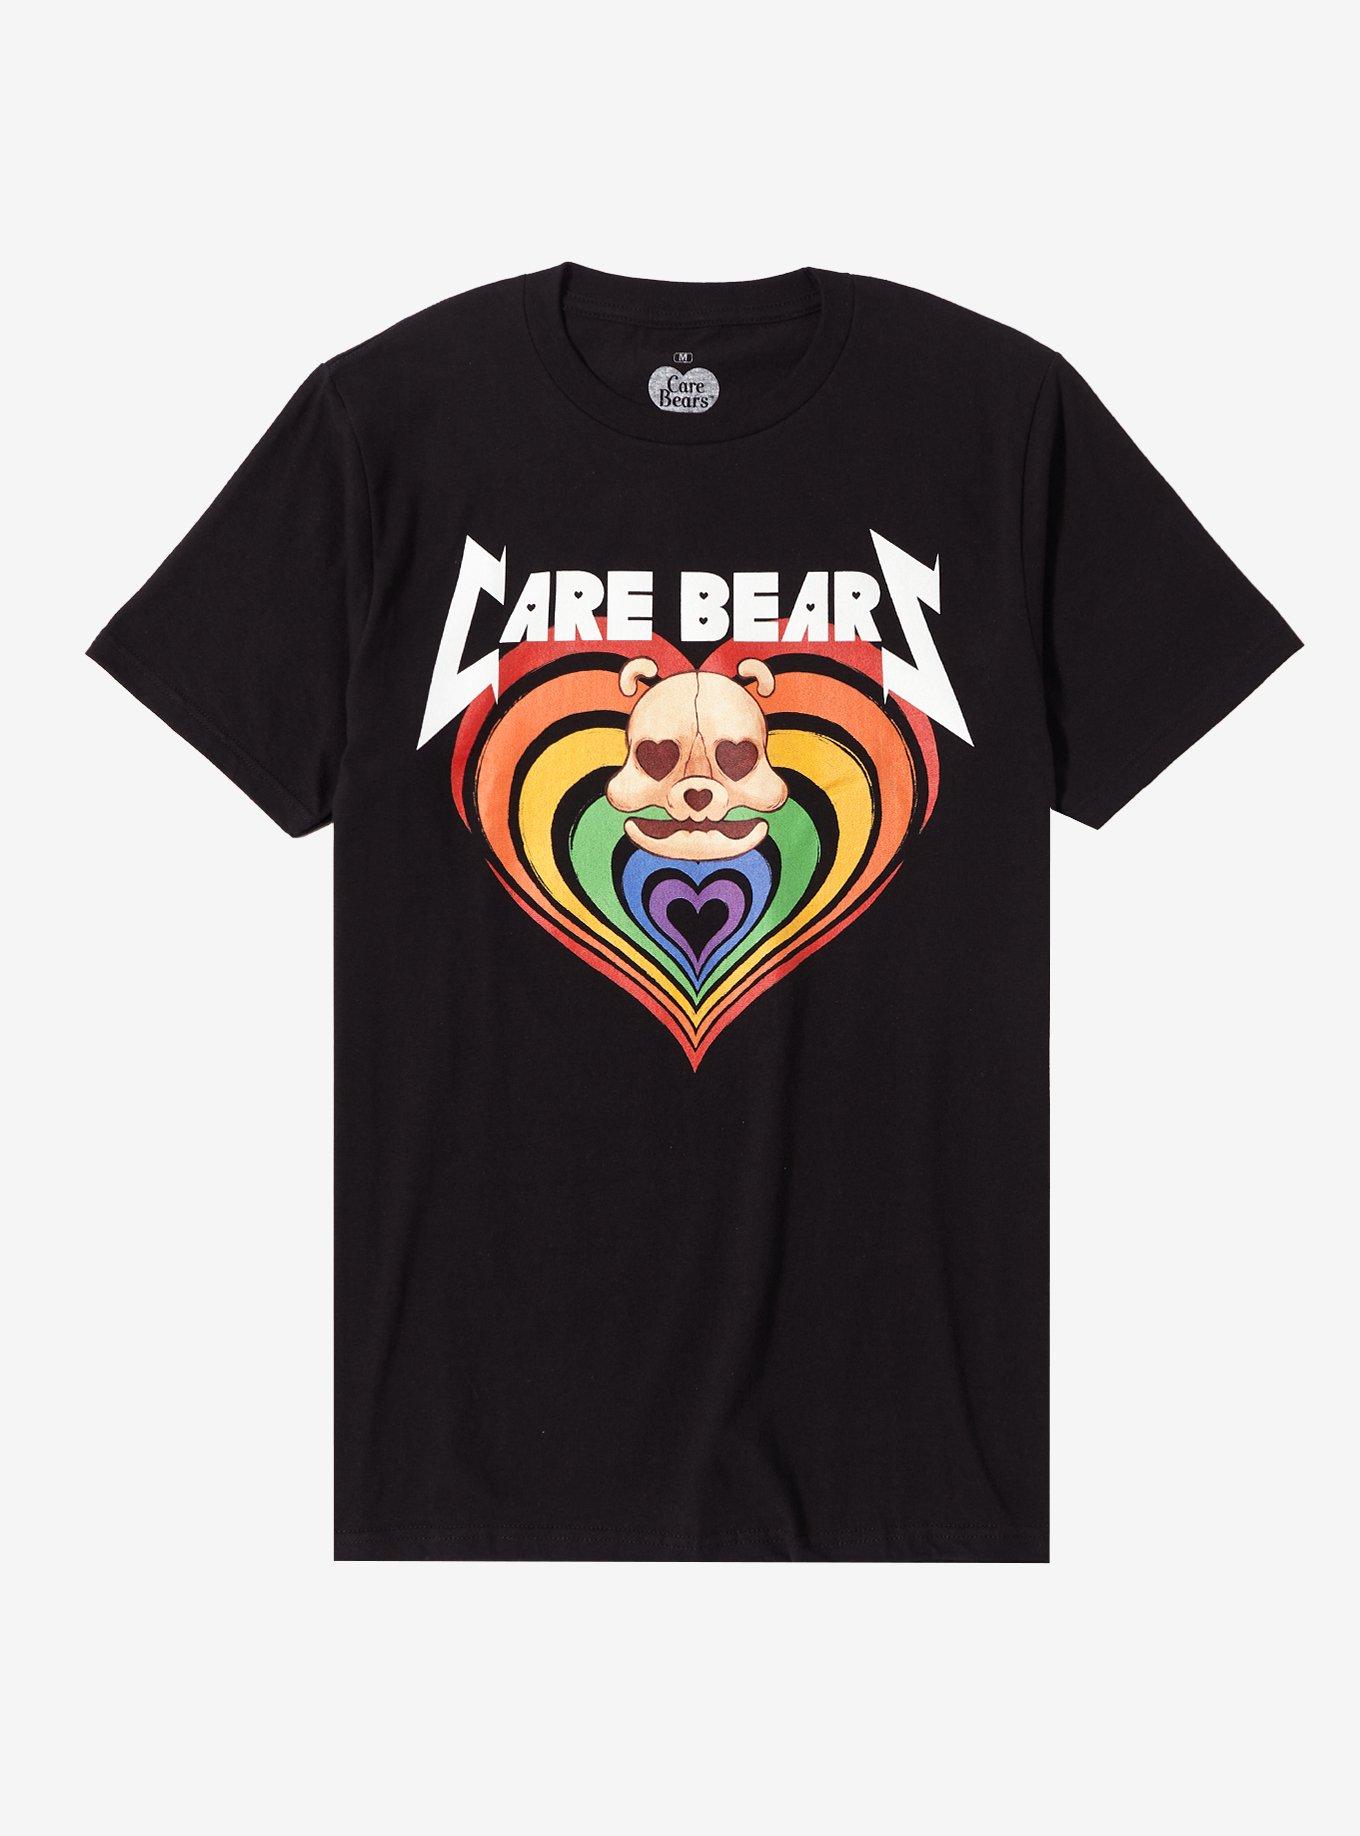 Care Bears Skull Heart Boyfriend Fit Girls T-Shirt, MULTI, hi-res